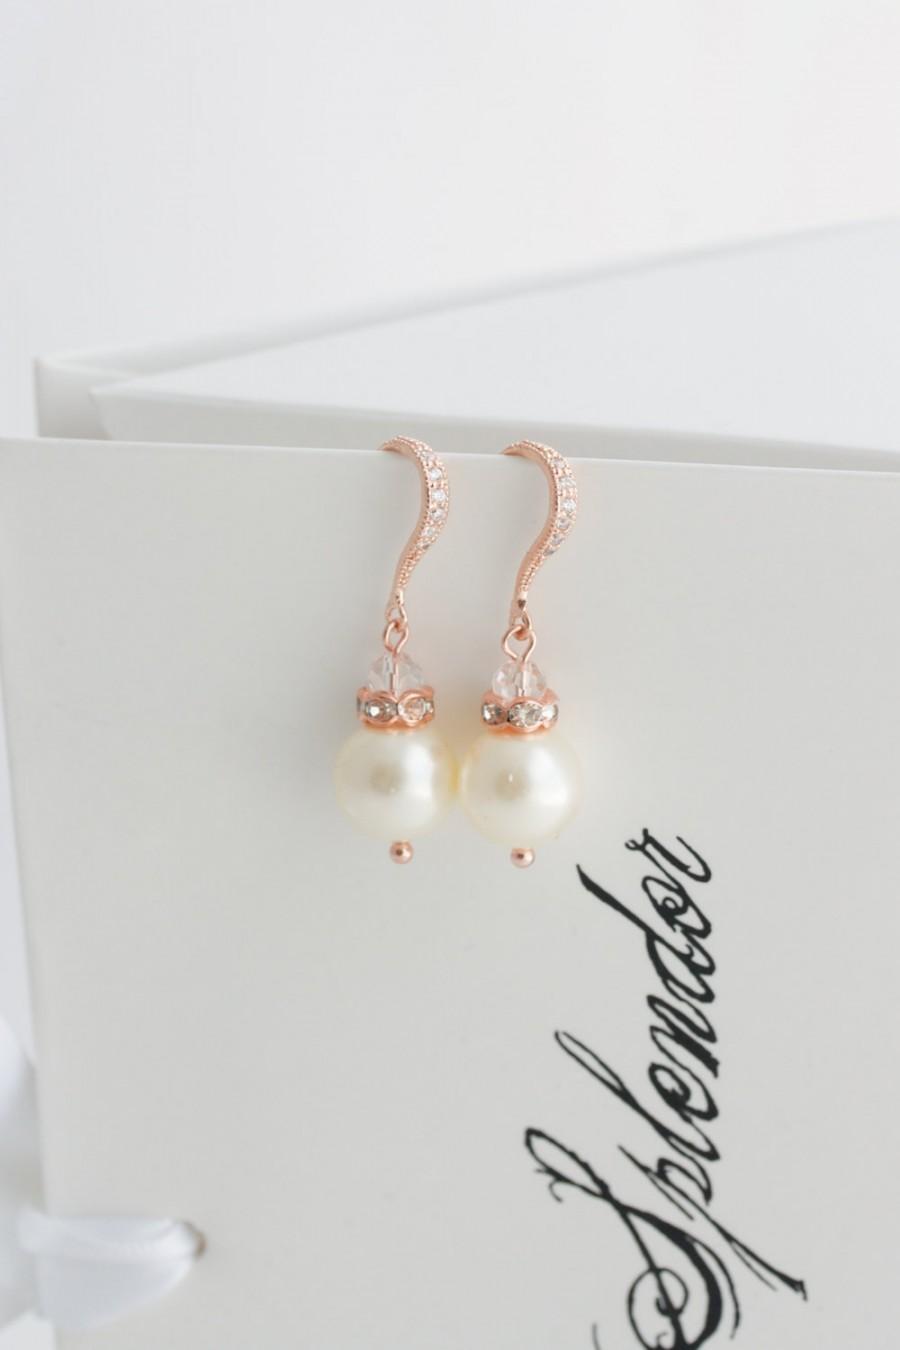 Mariage - Bridal Pearl Earrings Simple Wedding Earrings Rose Gold Pearl Drop Earrings Crystal Hook Wedding Jewlery SIMPLE NEVE